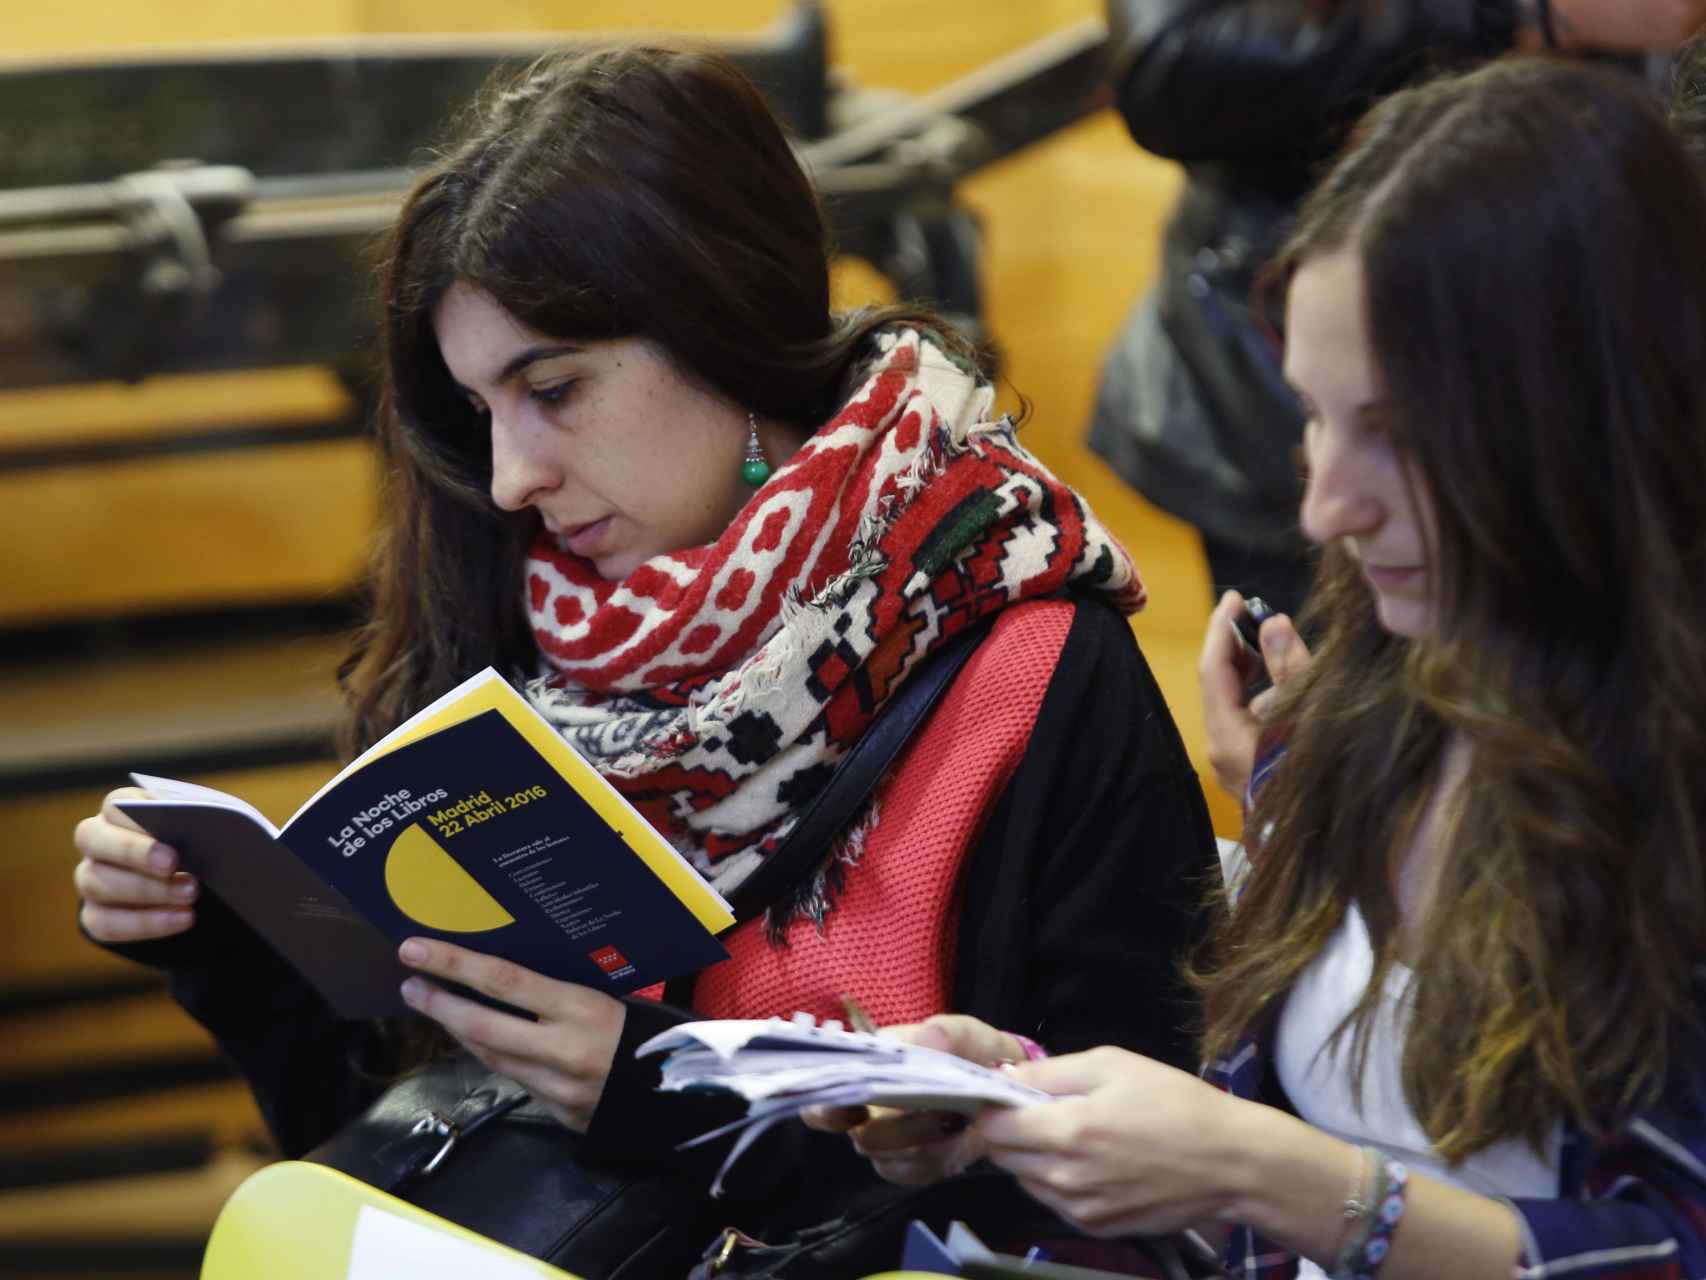 Dos jóvenes leen el programa de la Noche de los libros